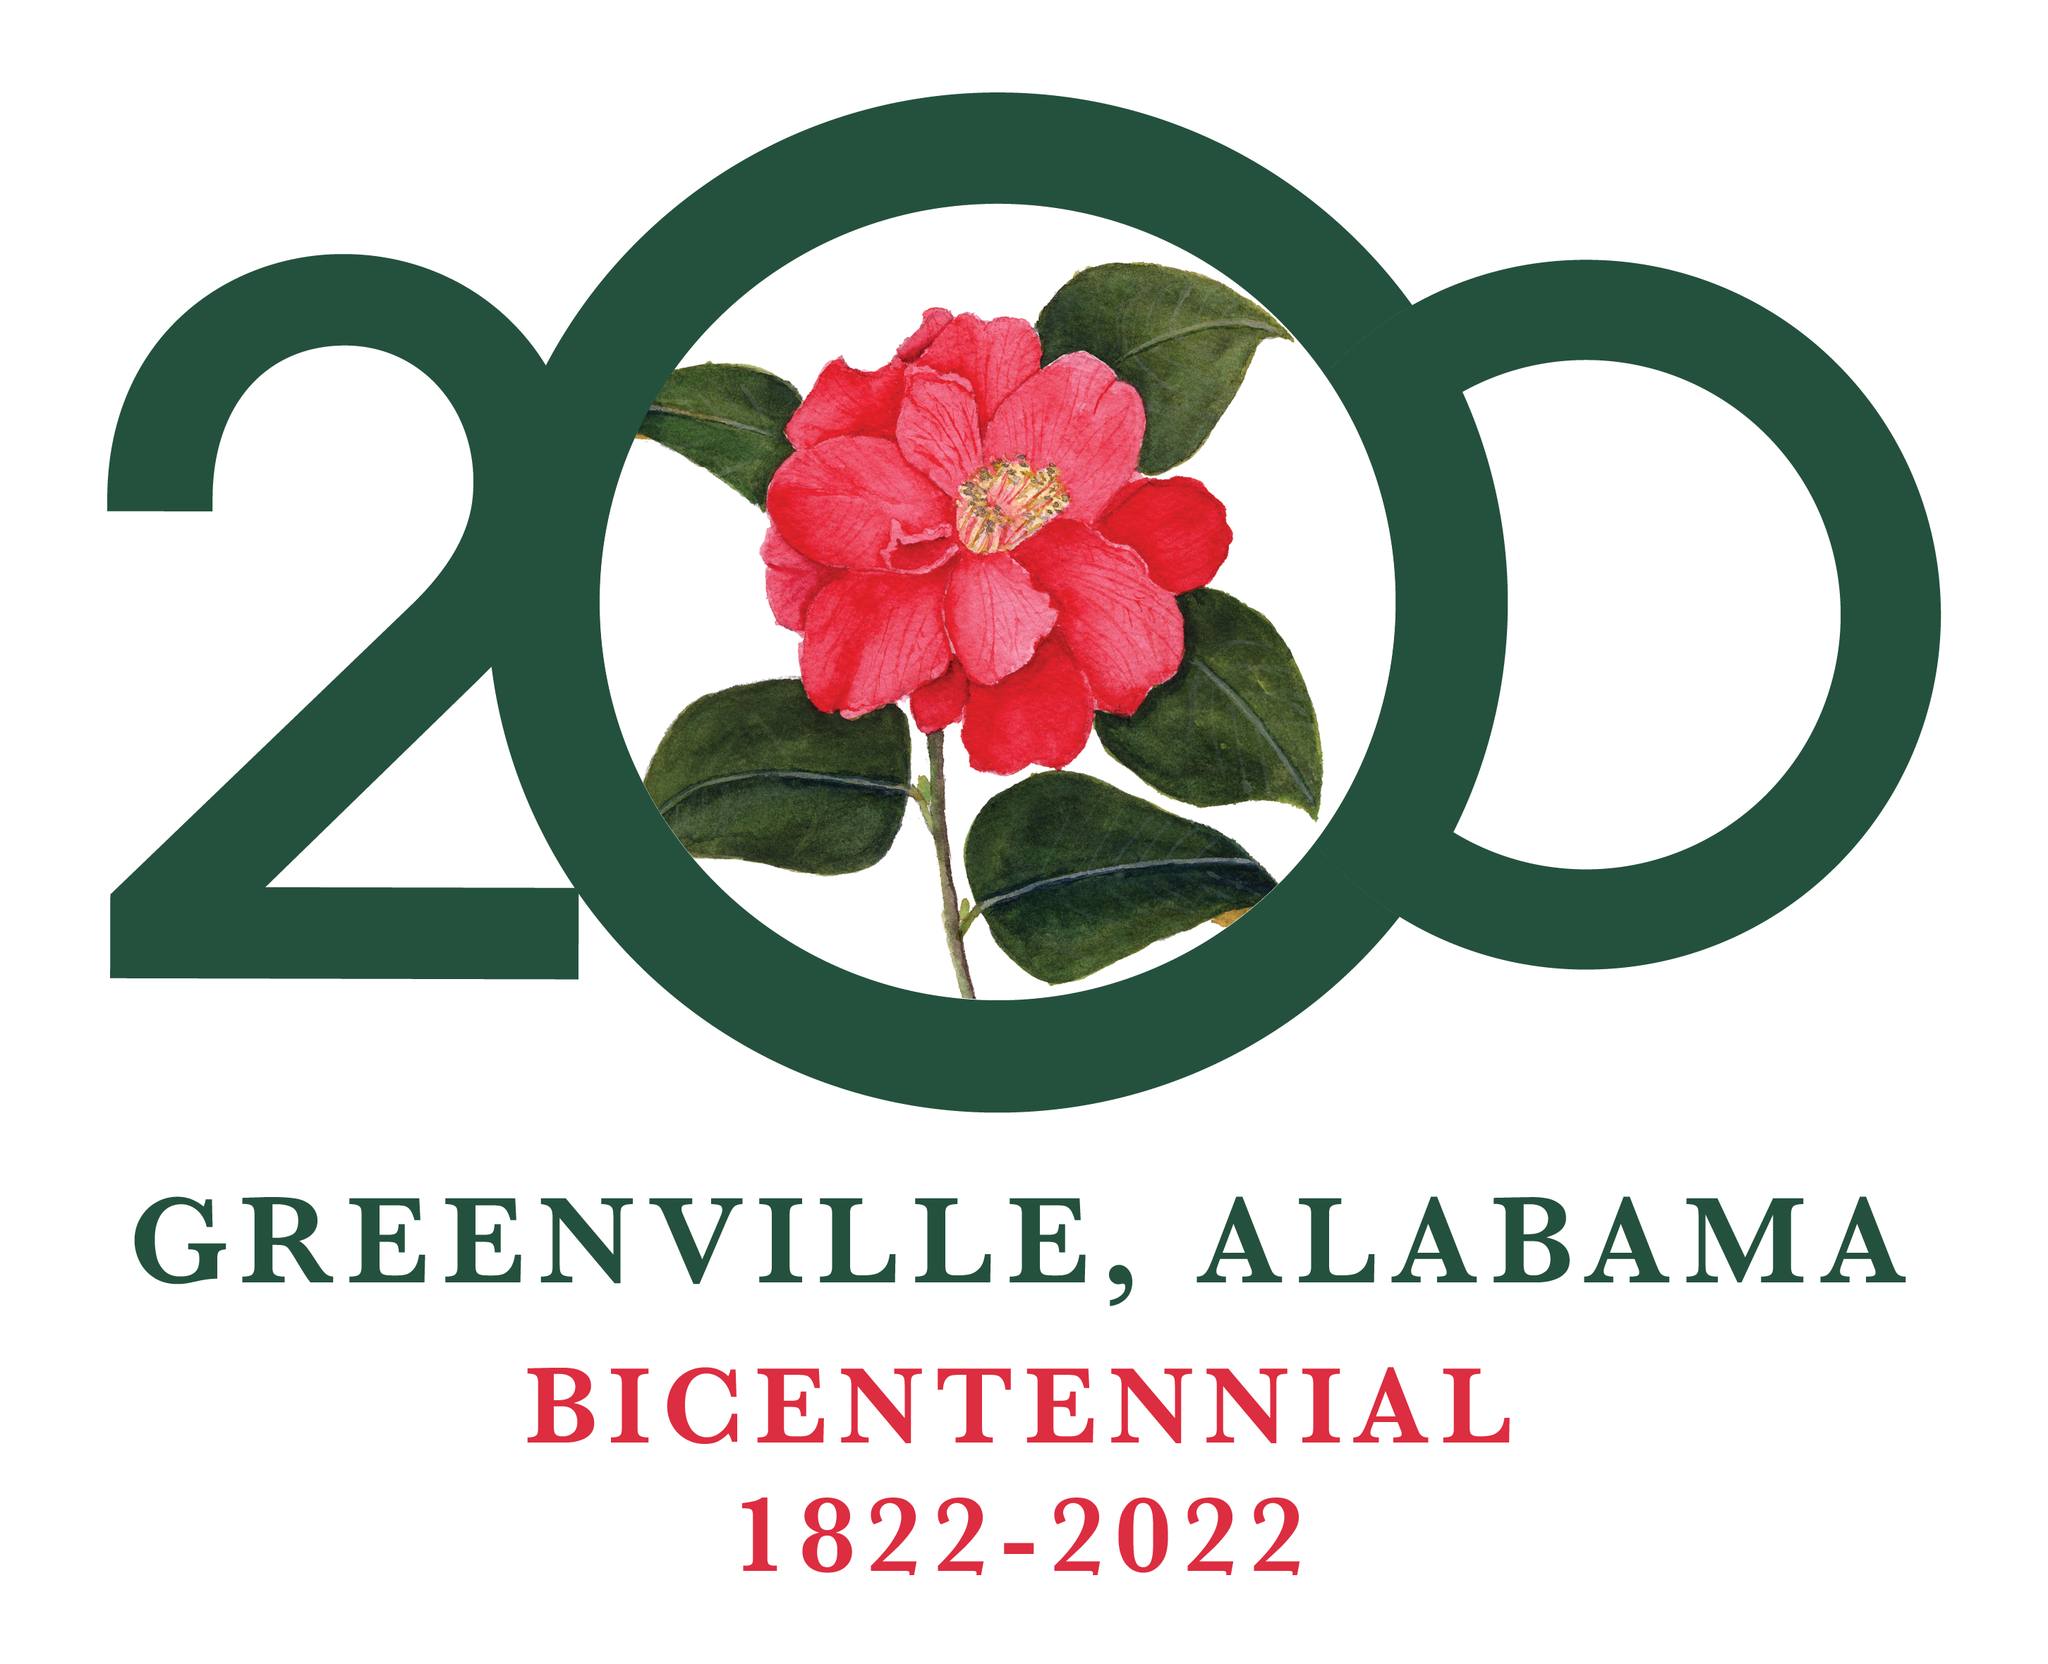 Greenville Alabama Bicentennial 